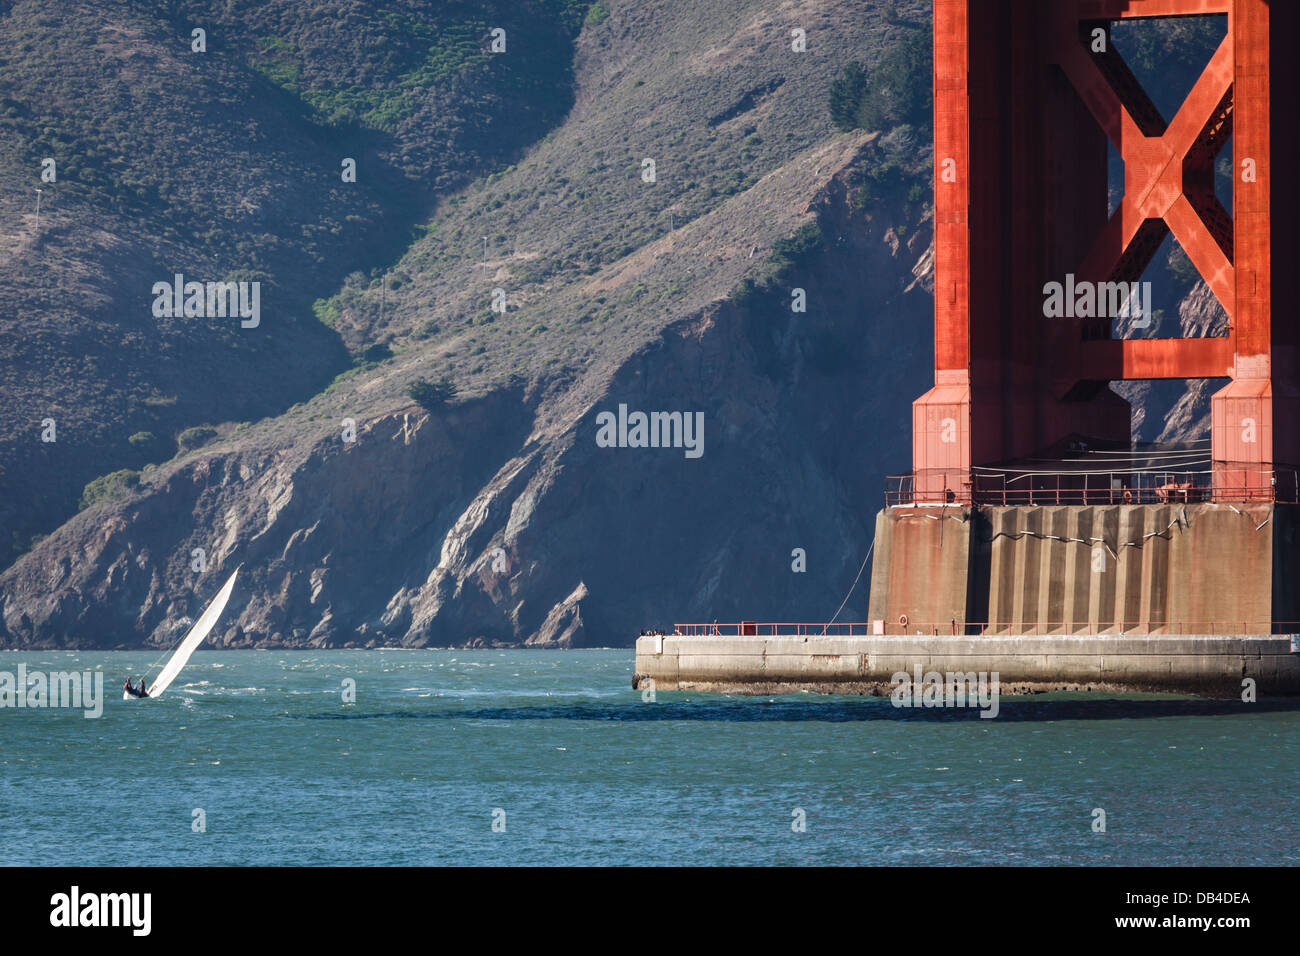 Le porte-avions USS Carl Vinson passe sous le Golden Gate Bridge Banque D'Images